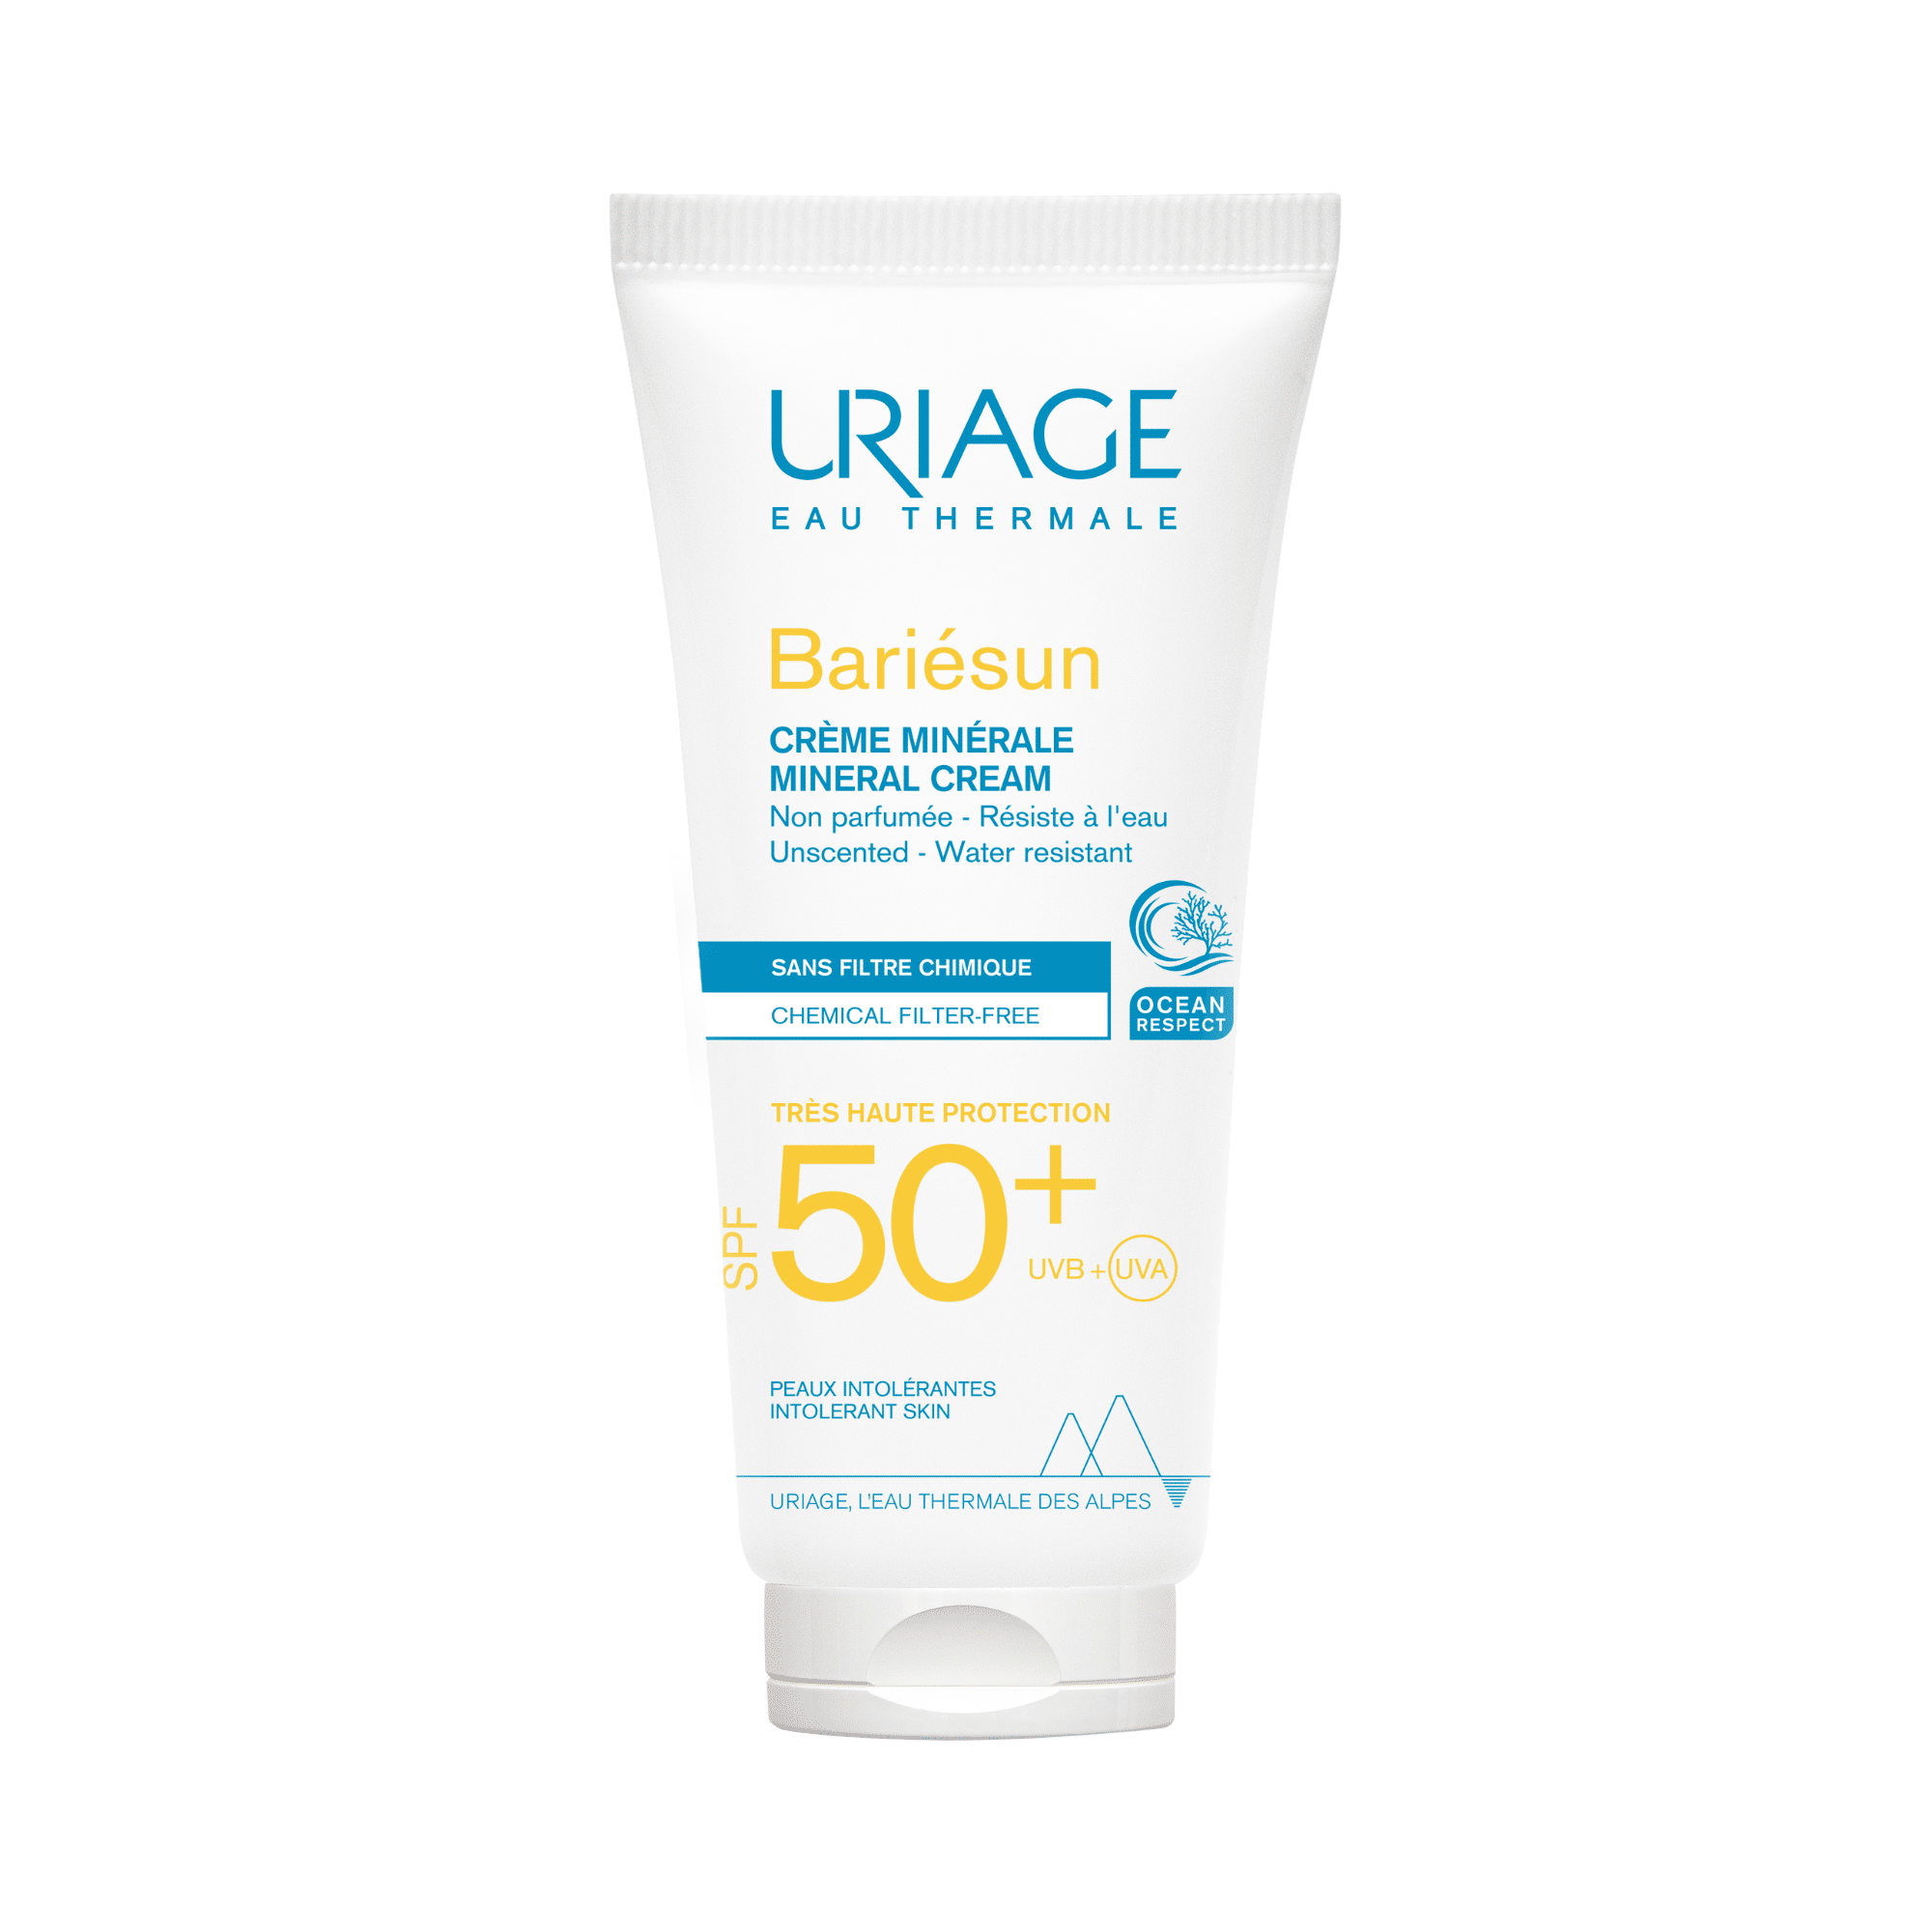 Uriage Bariesun Mineral Cream SPF50+100ml - Face, Body